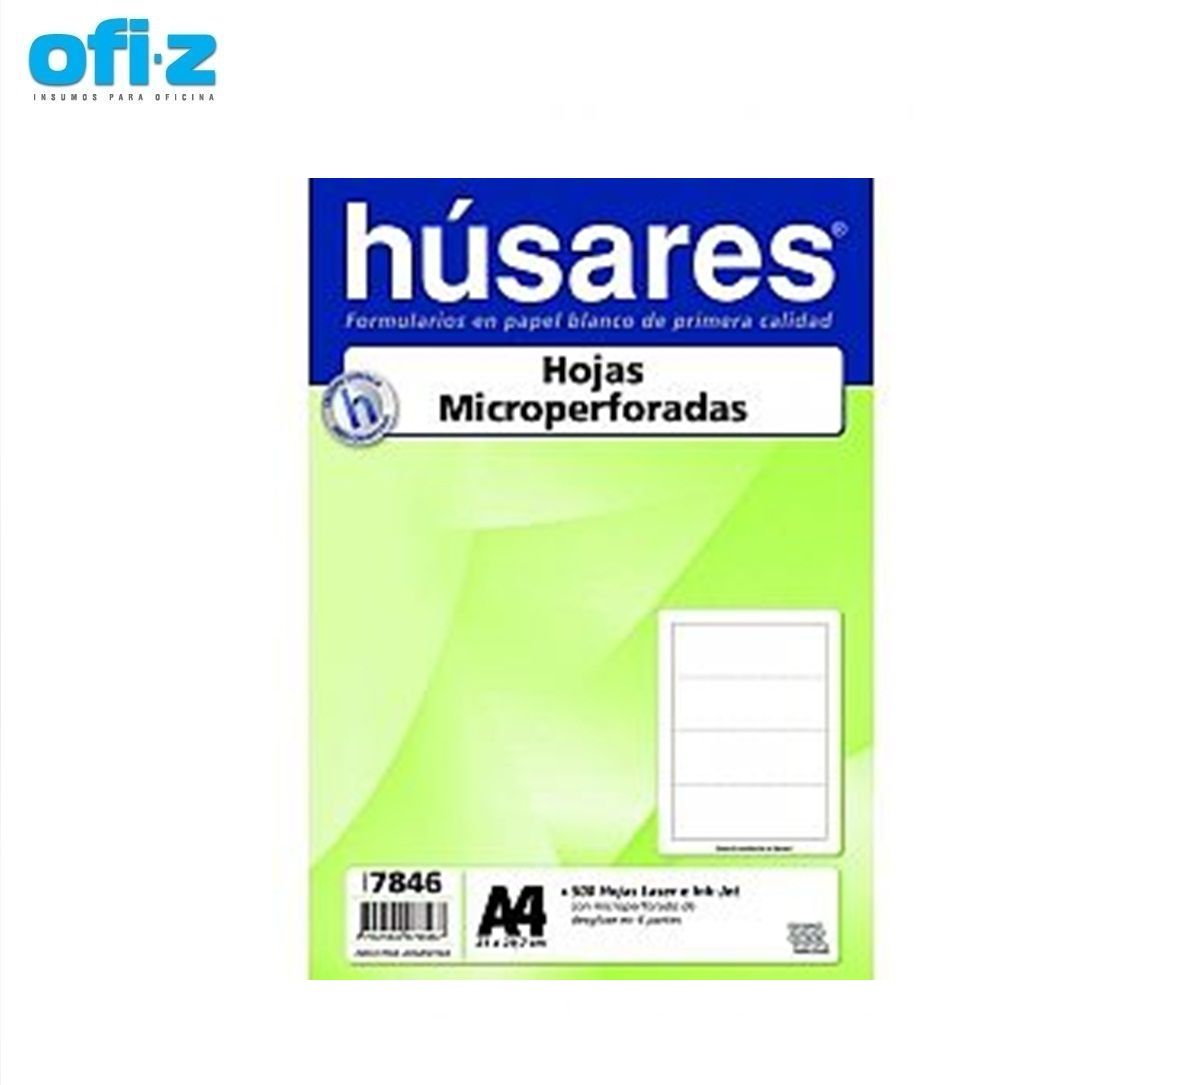 Hojas Micro perforadas 4 partes 500hjs A4 Husares